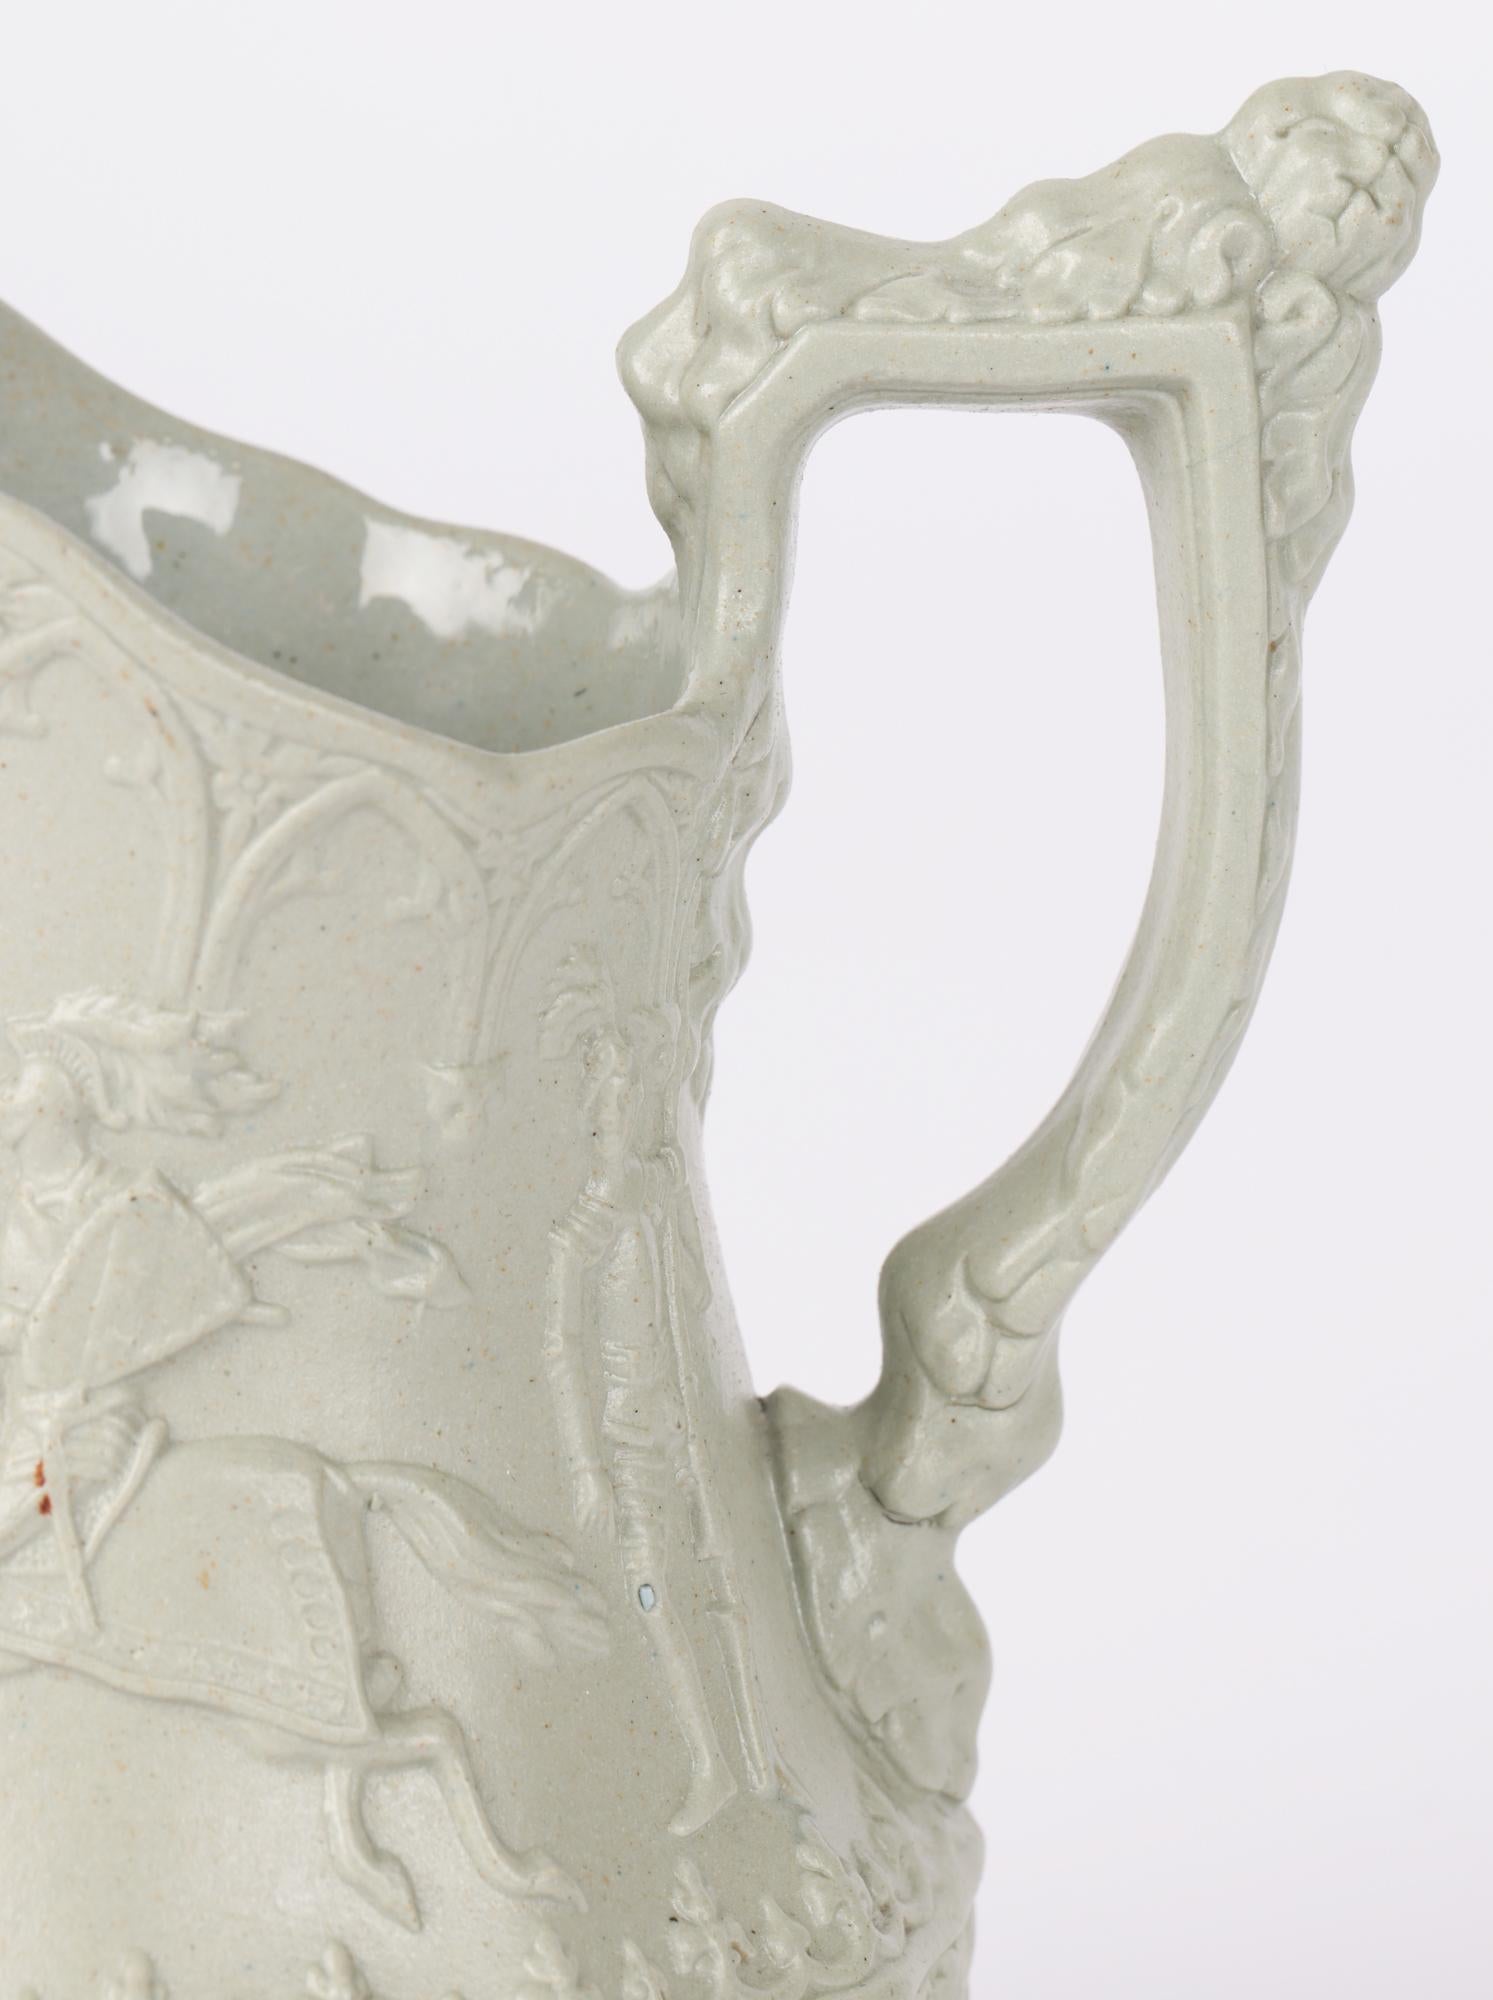 Rare et exceptionnelle cruche en céramique anglaise ancienne décorée du motif des chevaliers jouteurs par William Ridgway et datant d'environ 1840. La cruche de taille miniature est fabriquée en grès vert/gris drapé et est moulée de façon nette avec